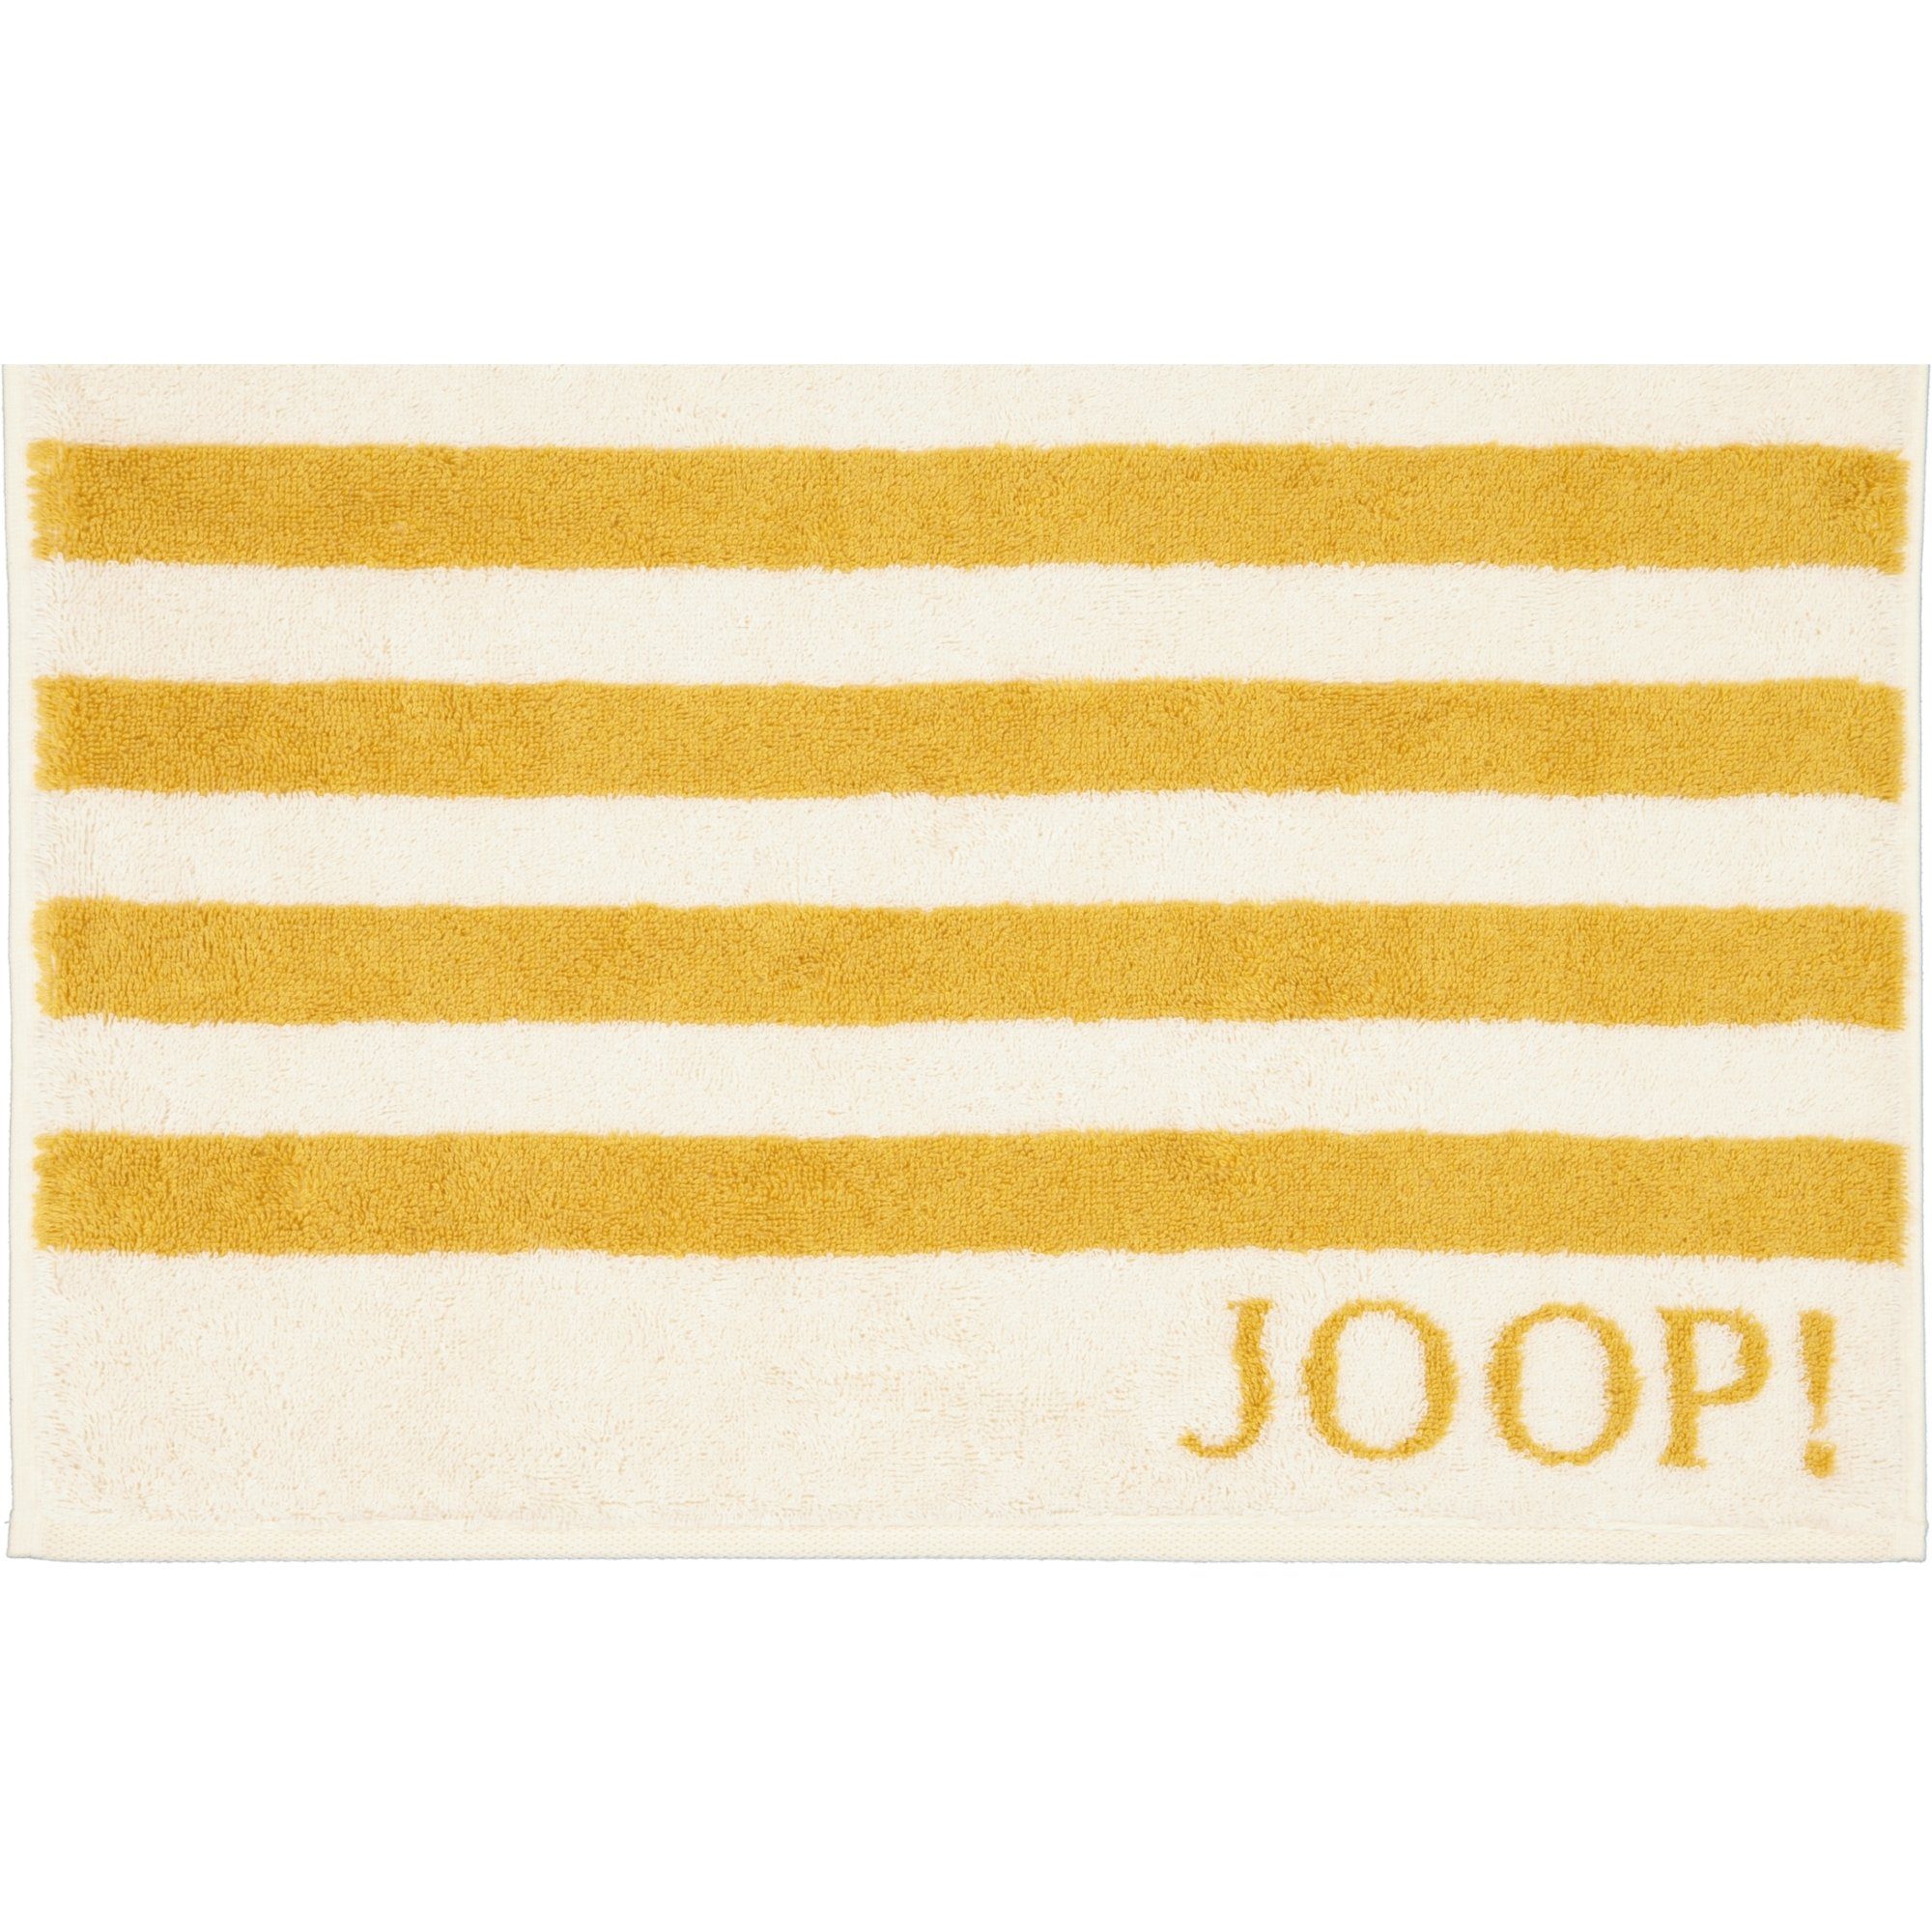 Joop! Handtücher unbekannt 100% Classic Baumwolle 1610, Stripes